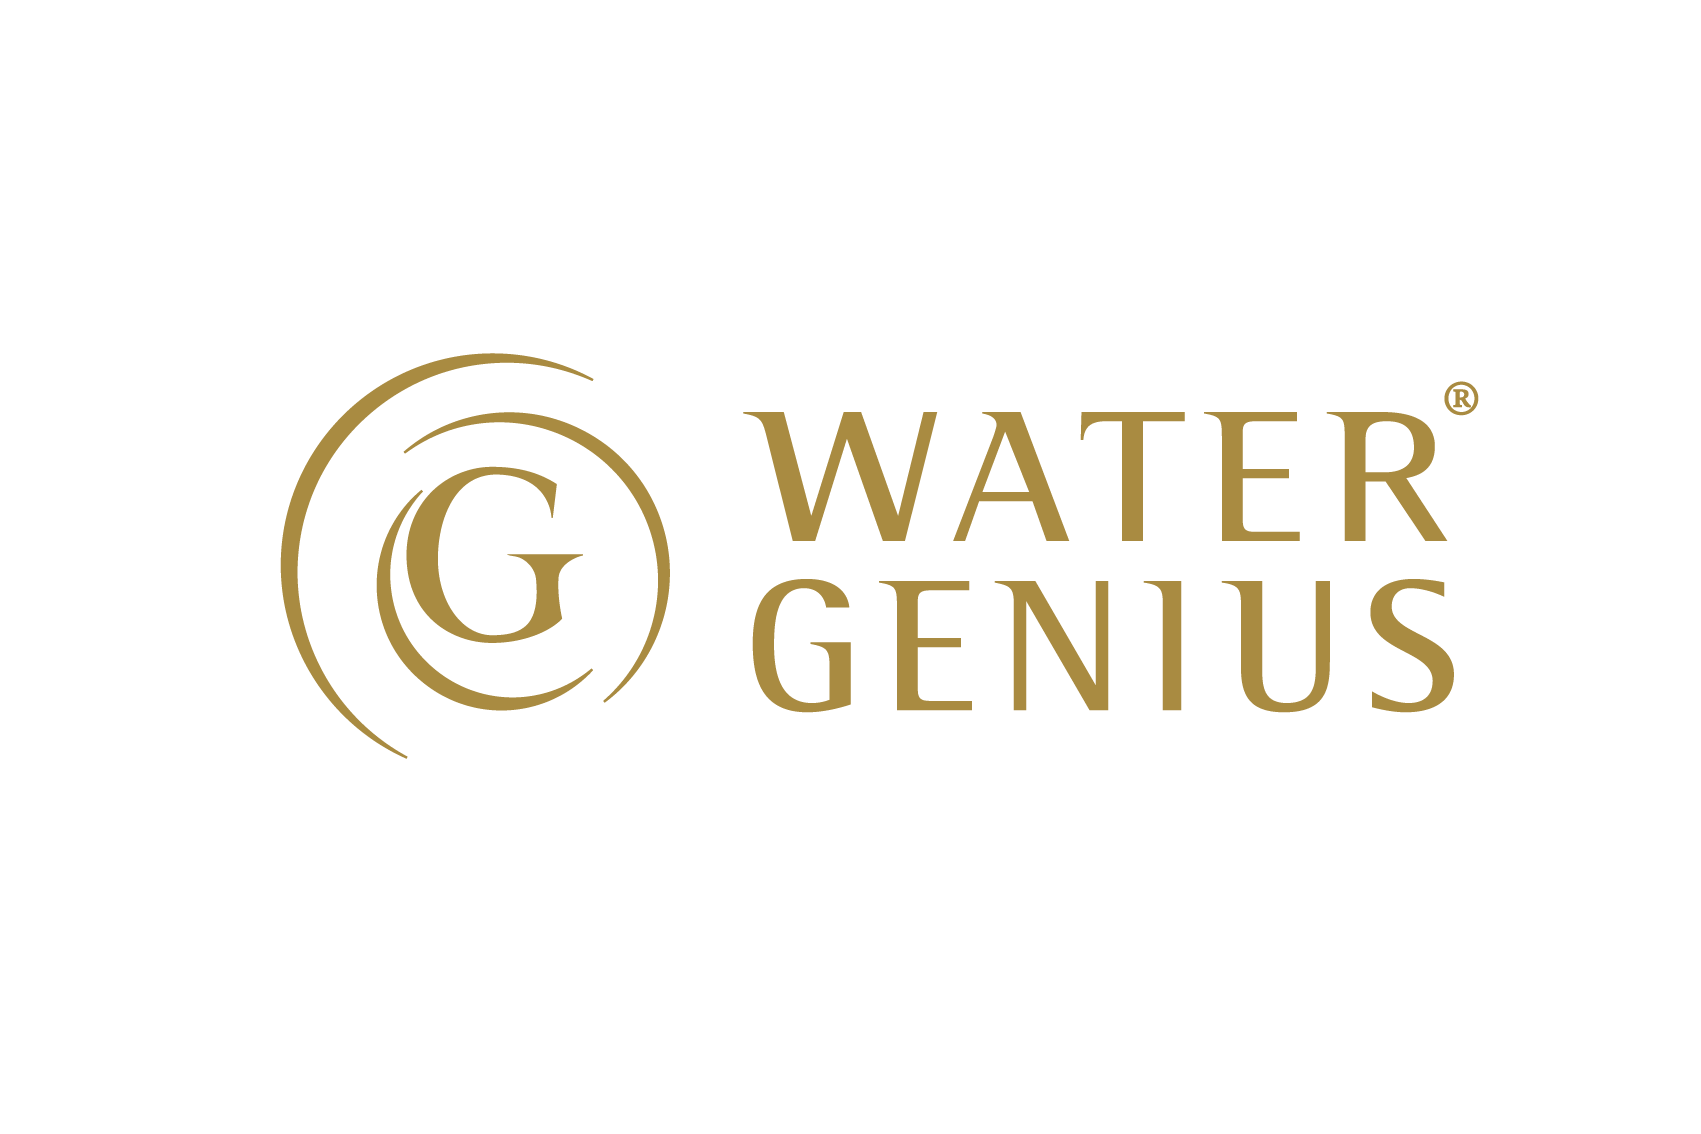 Watergenius branding by Vandekerckhove & Devos